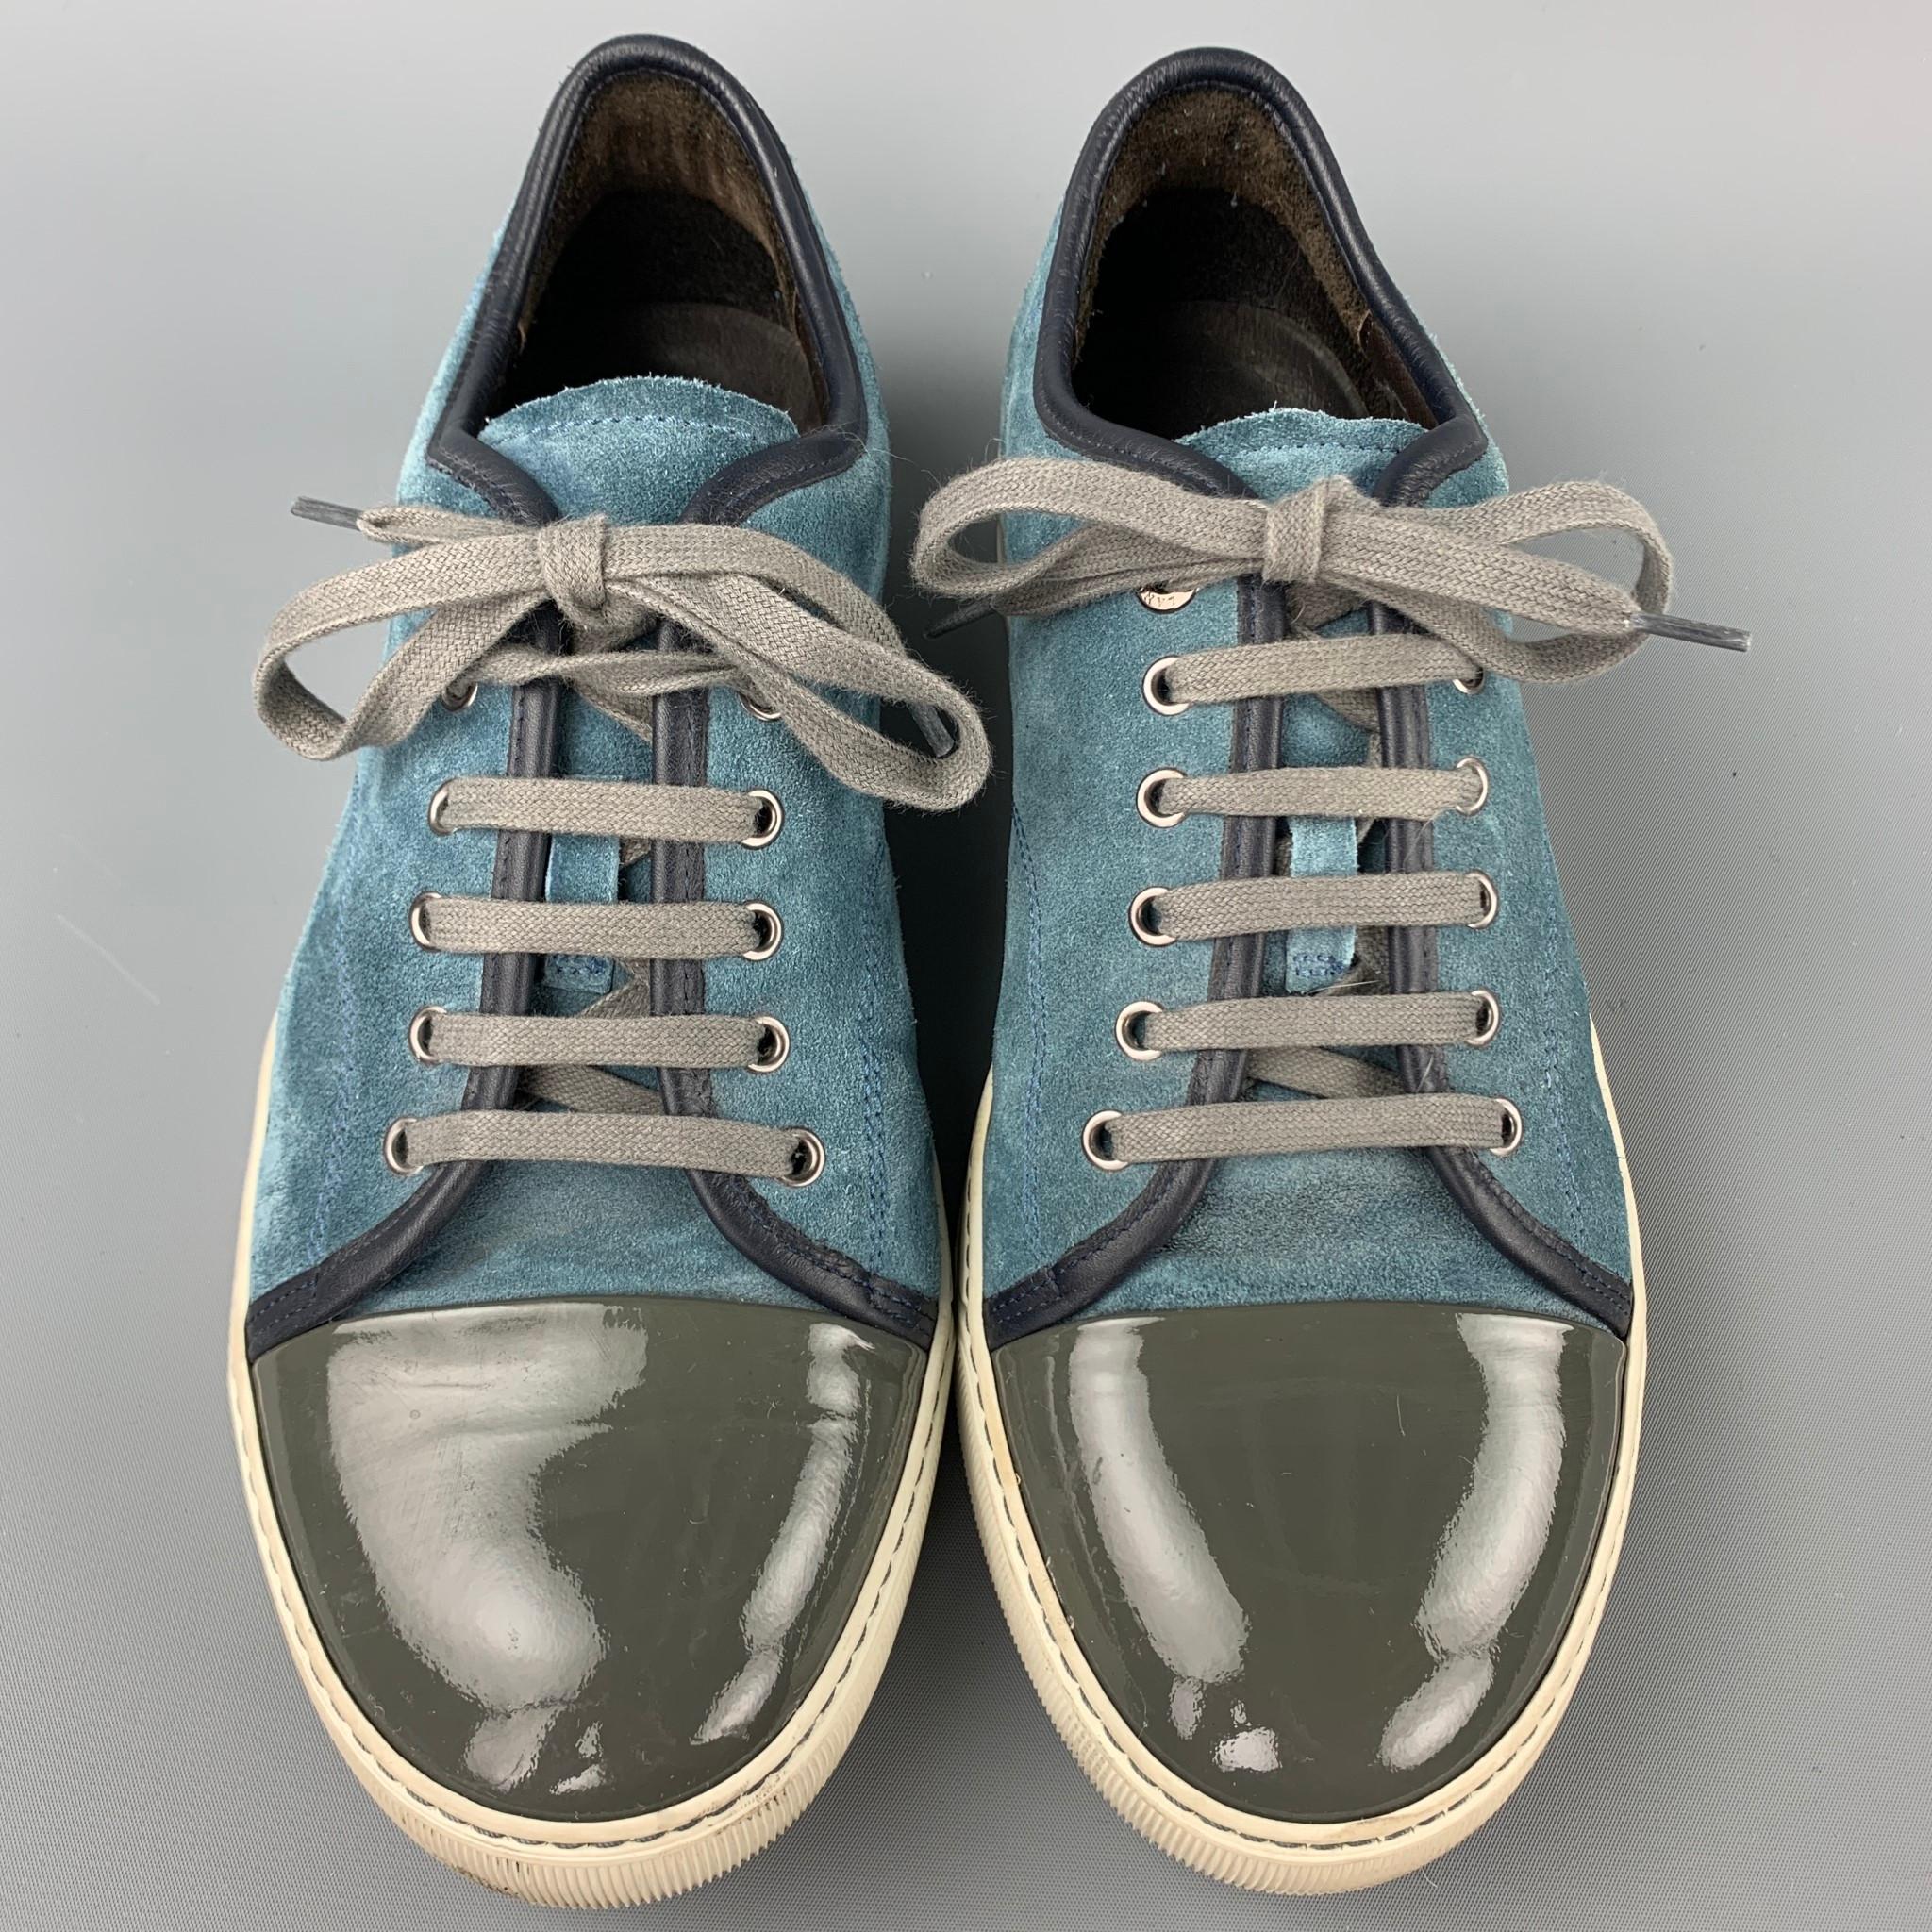 blue lanvin shoes